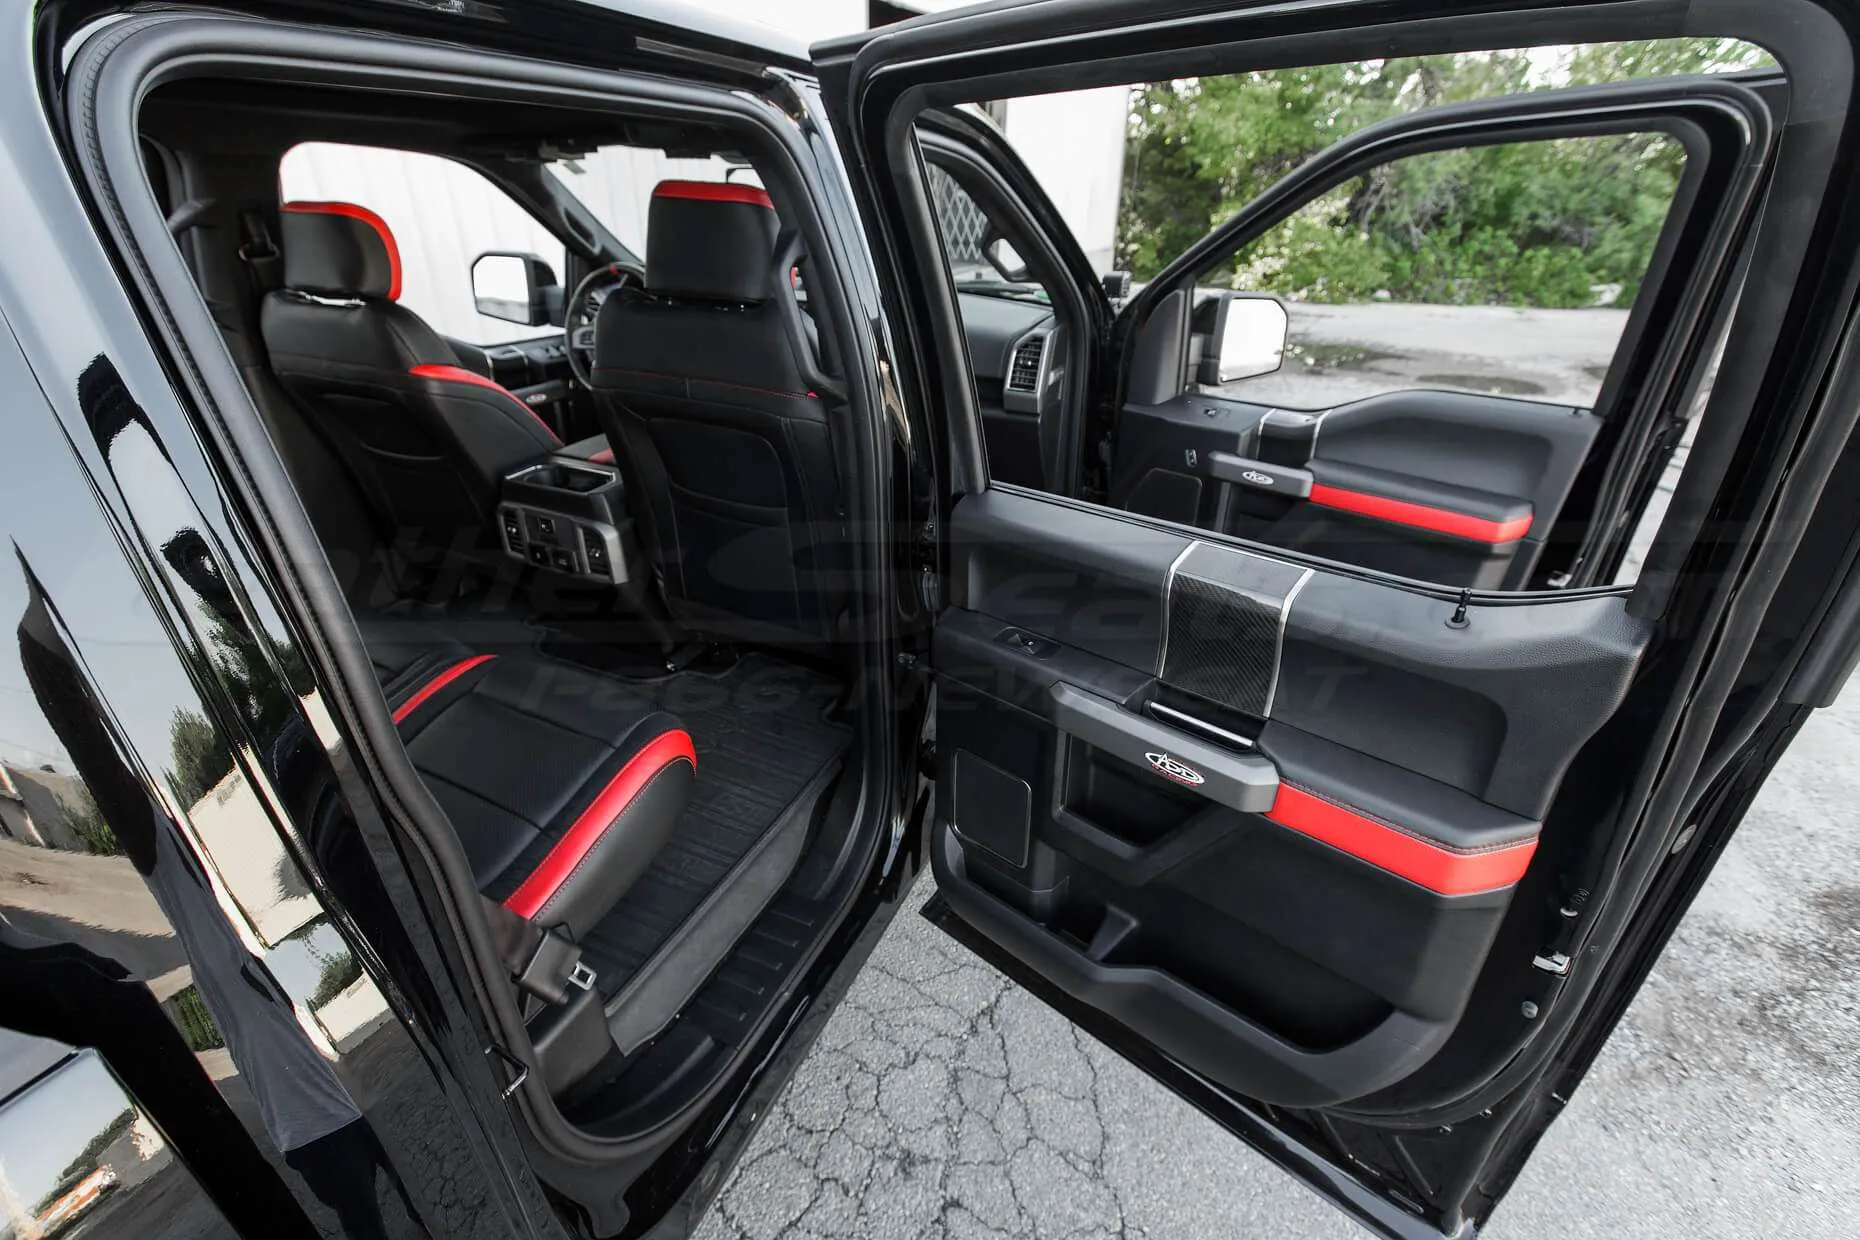 Ford Raptor installed upholstery kit - Black & Bright Red - Door armrests